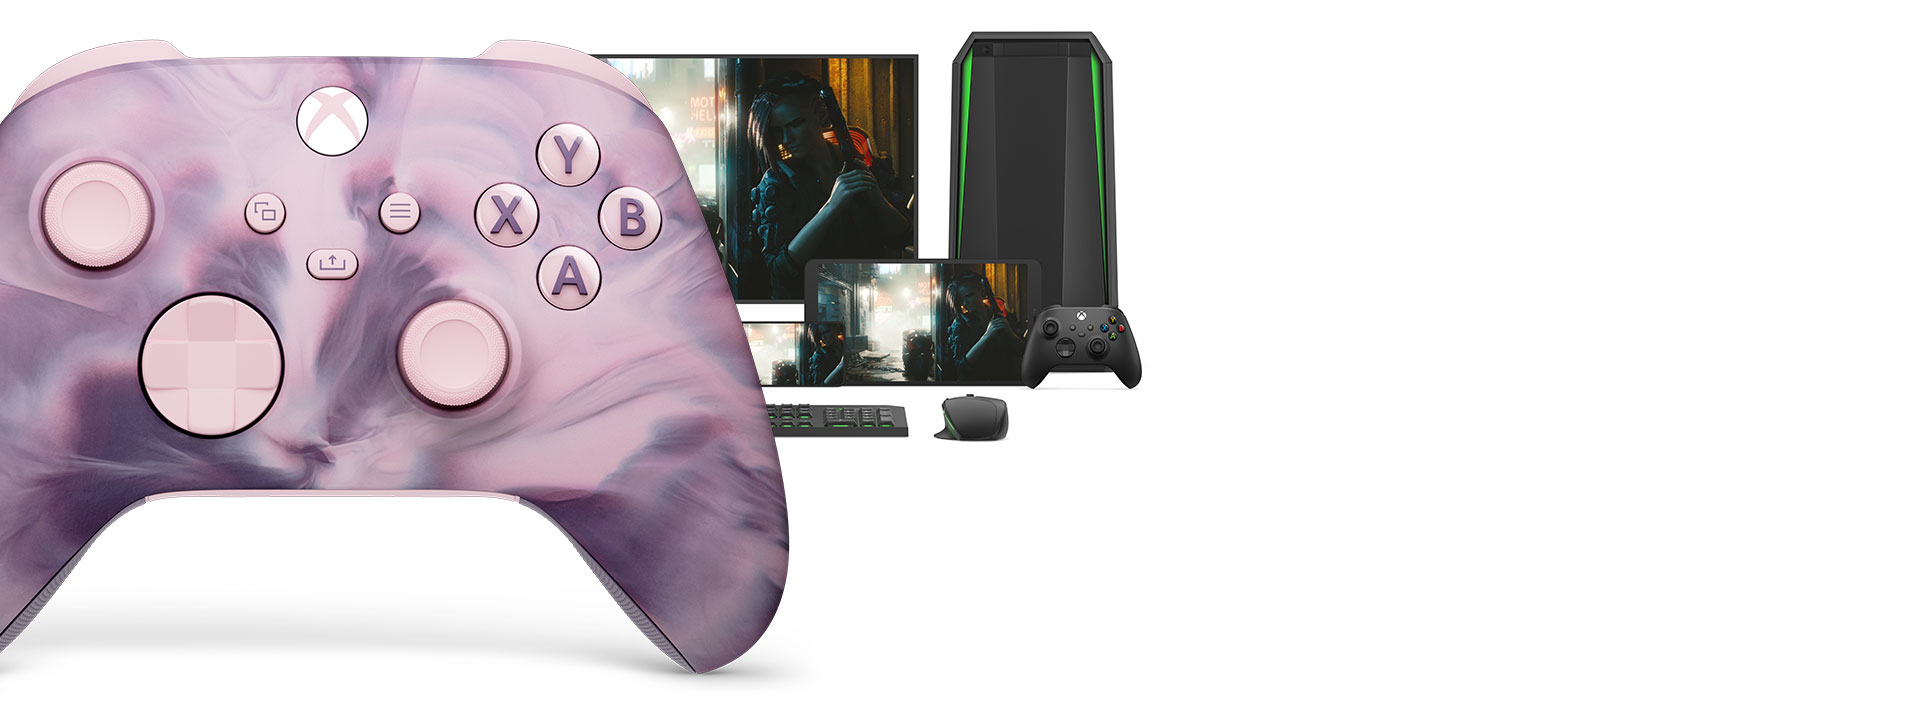 Xbox 無線控制器 –《莓果風暴》特別版的右側正面，背景是不同的遊戲平台